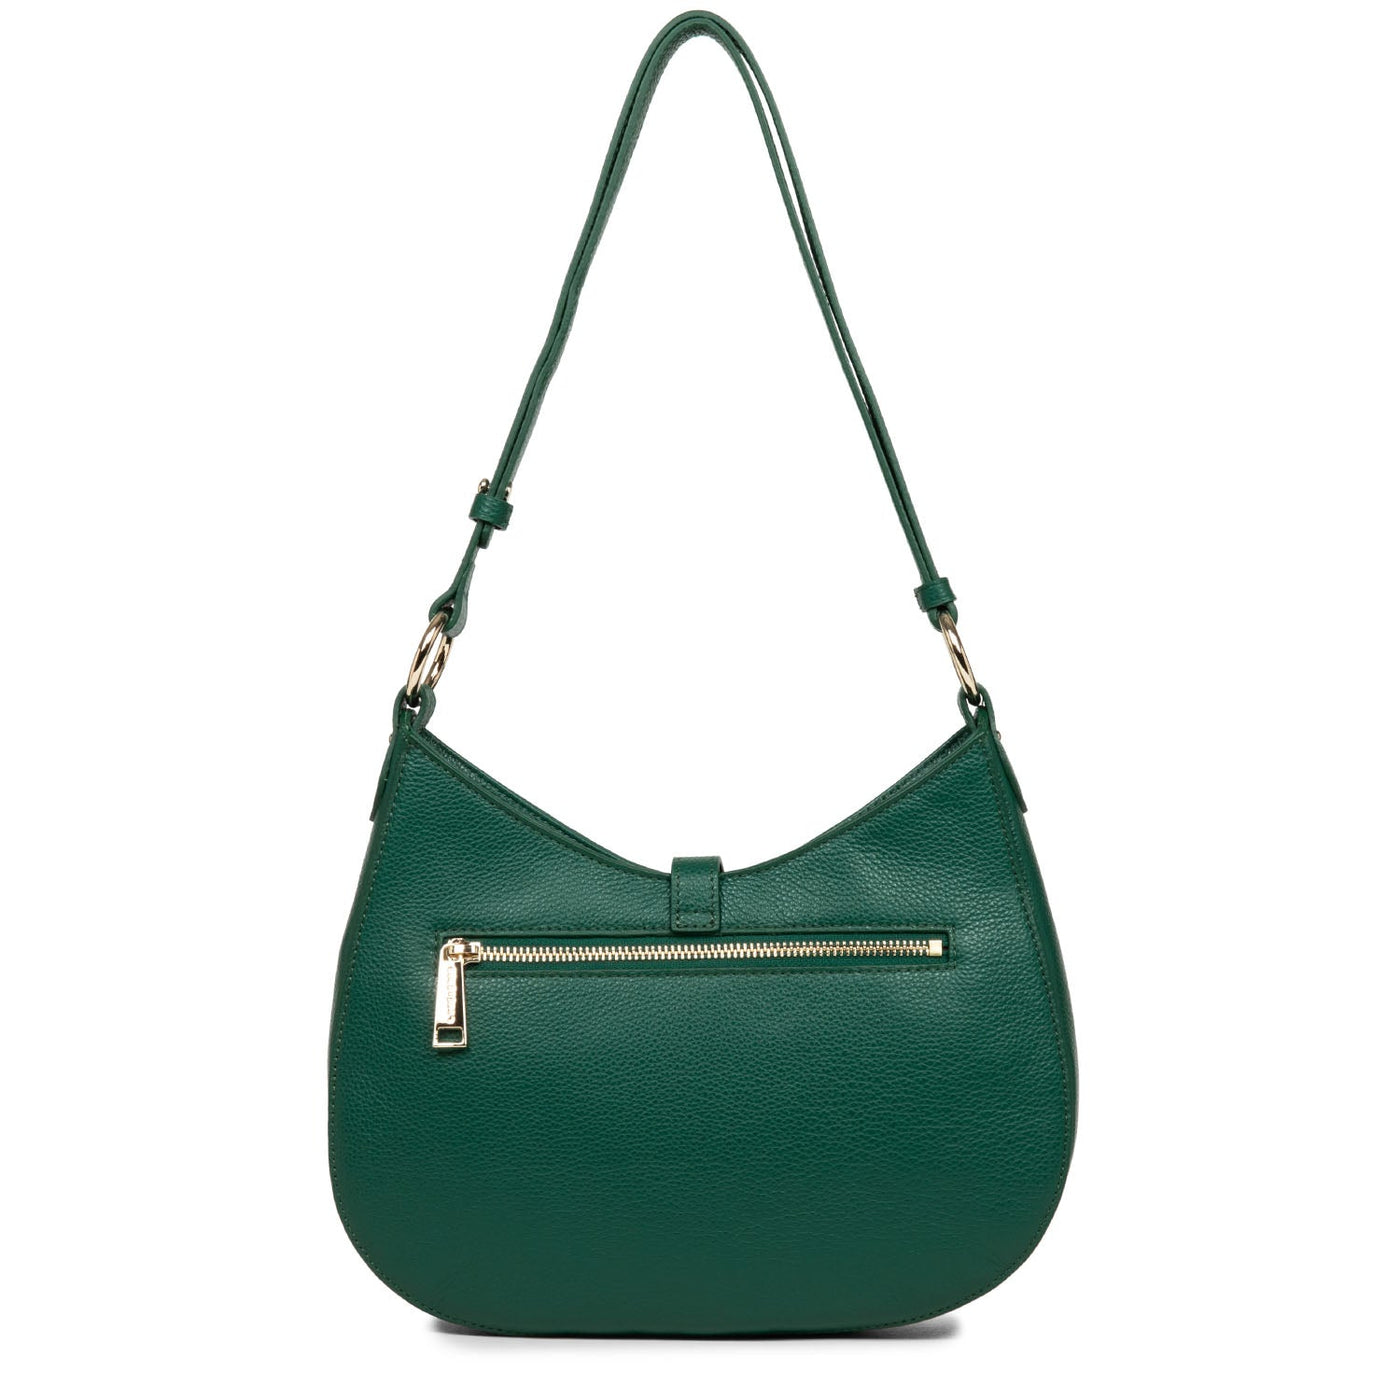 m shoulder bag - foulonné milano #couleur_vert-paon